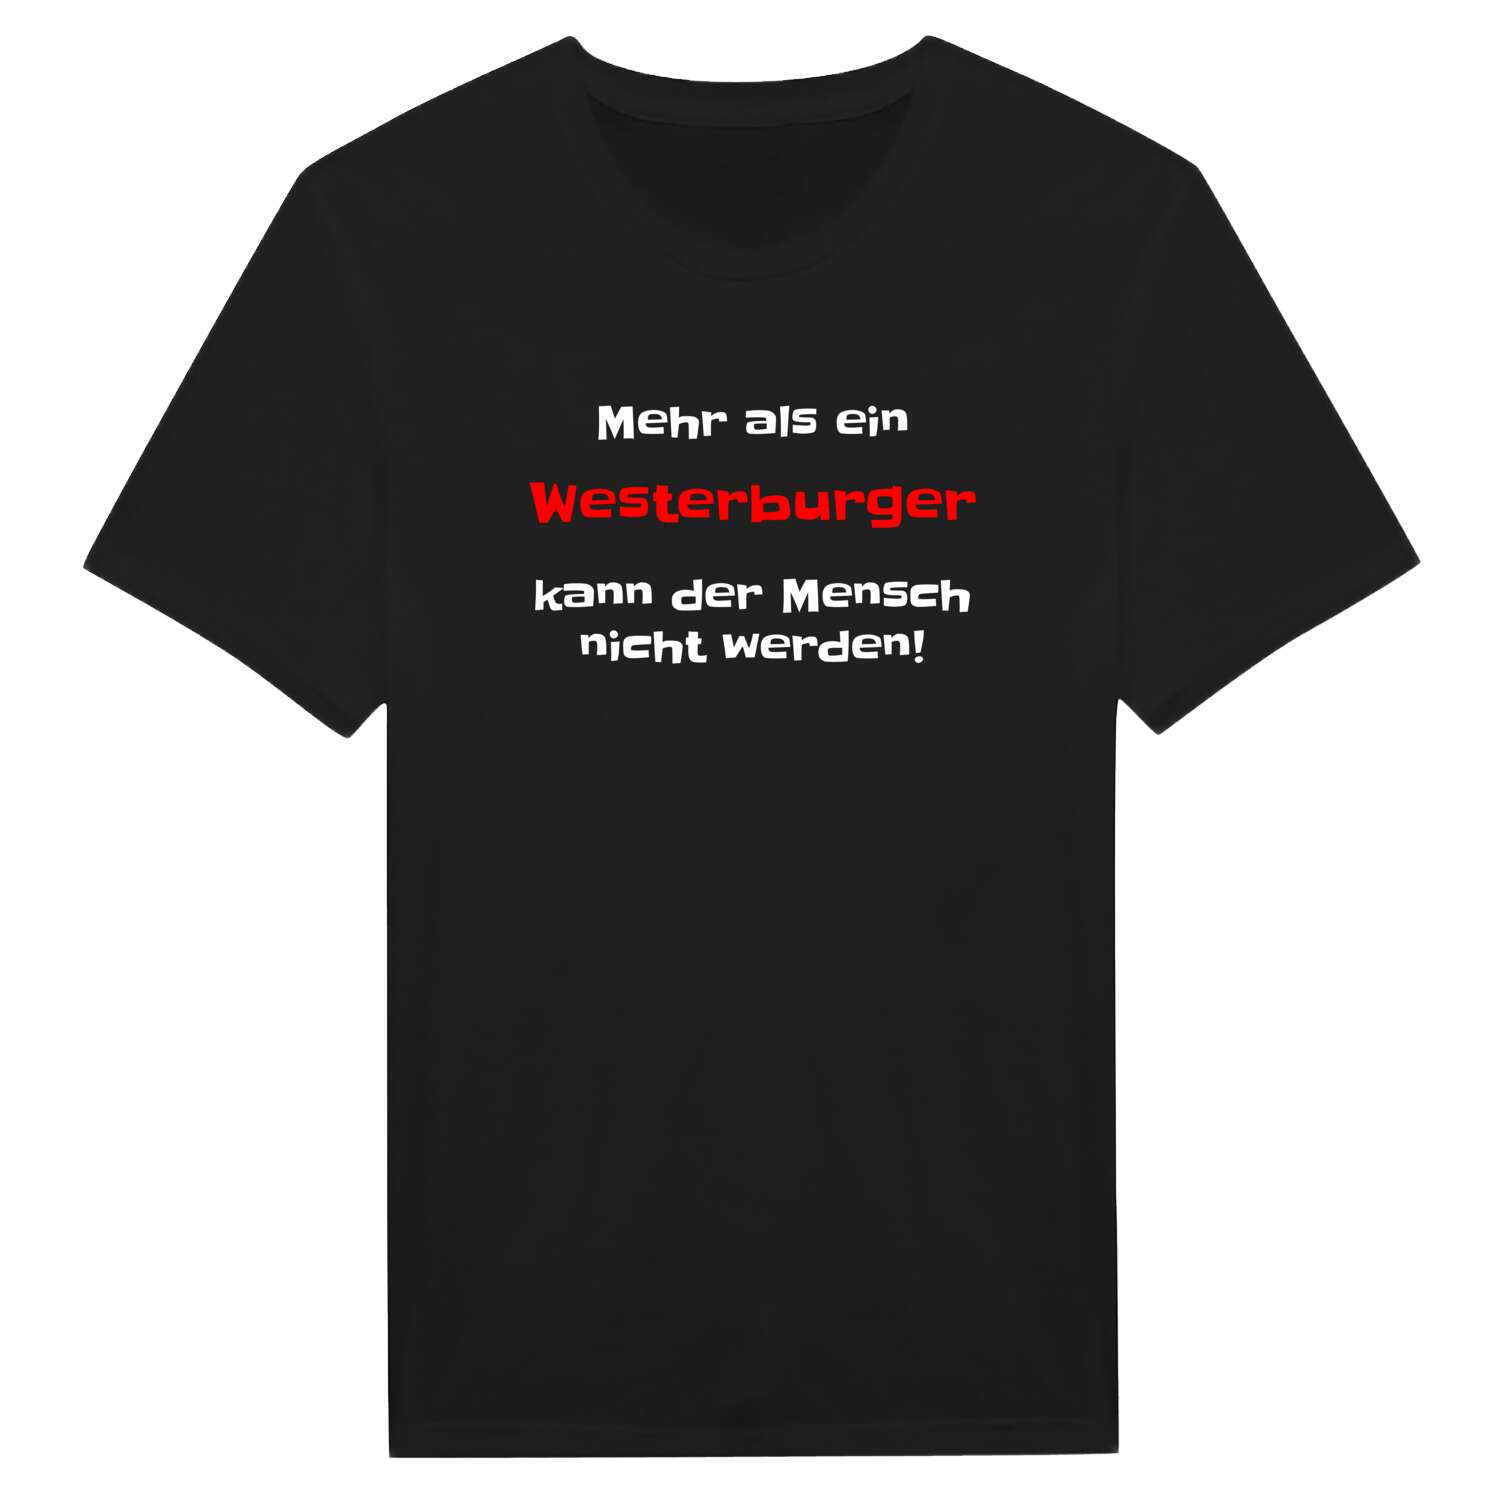 Westerburg T-Shirt »Mehr als ein«